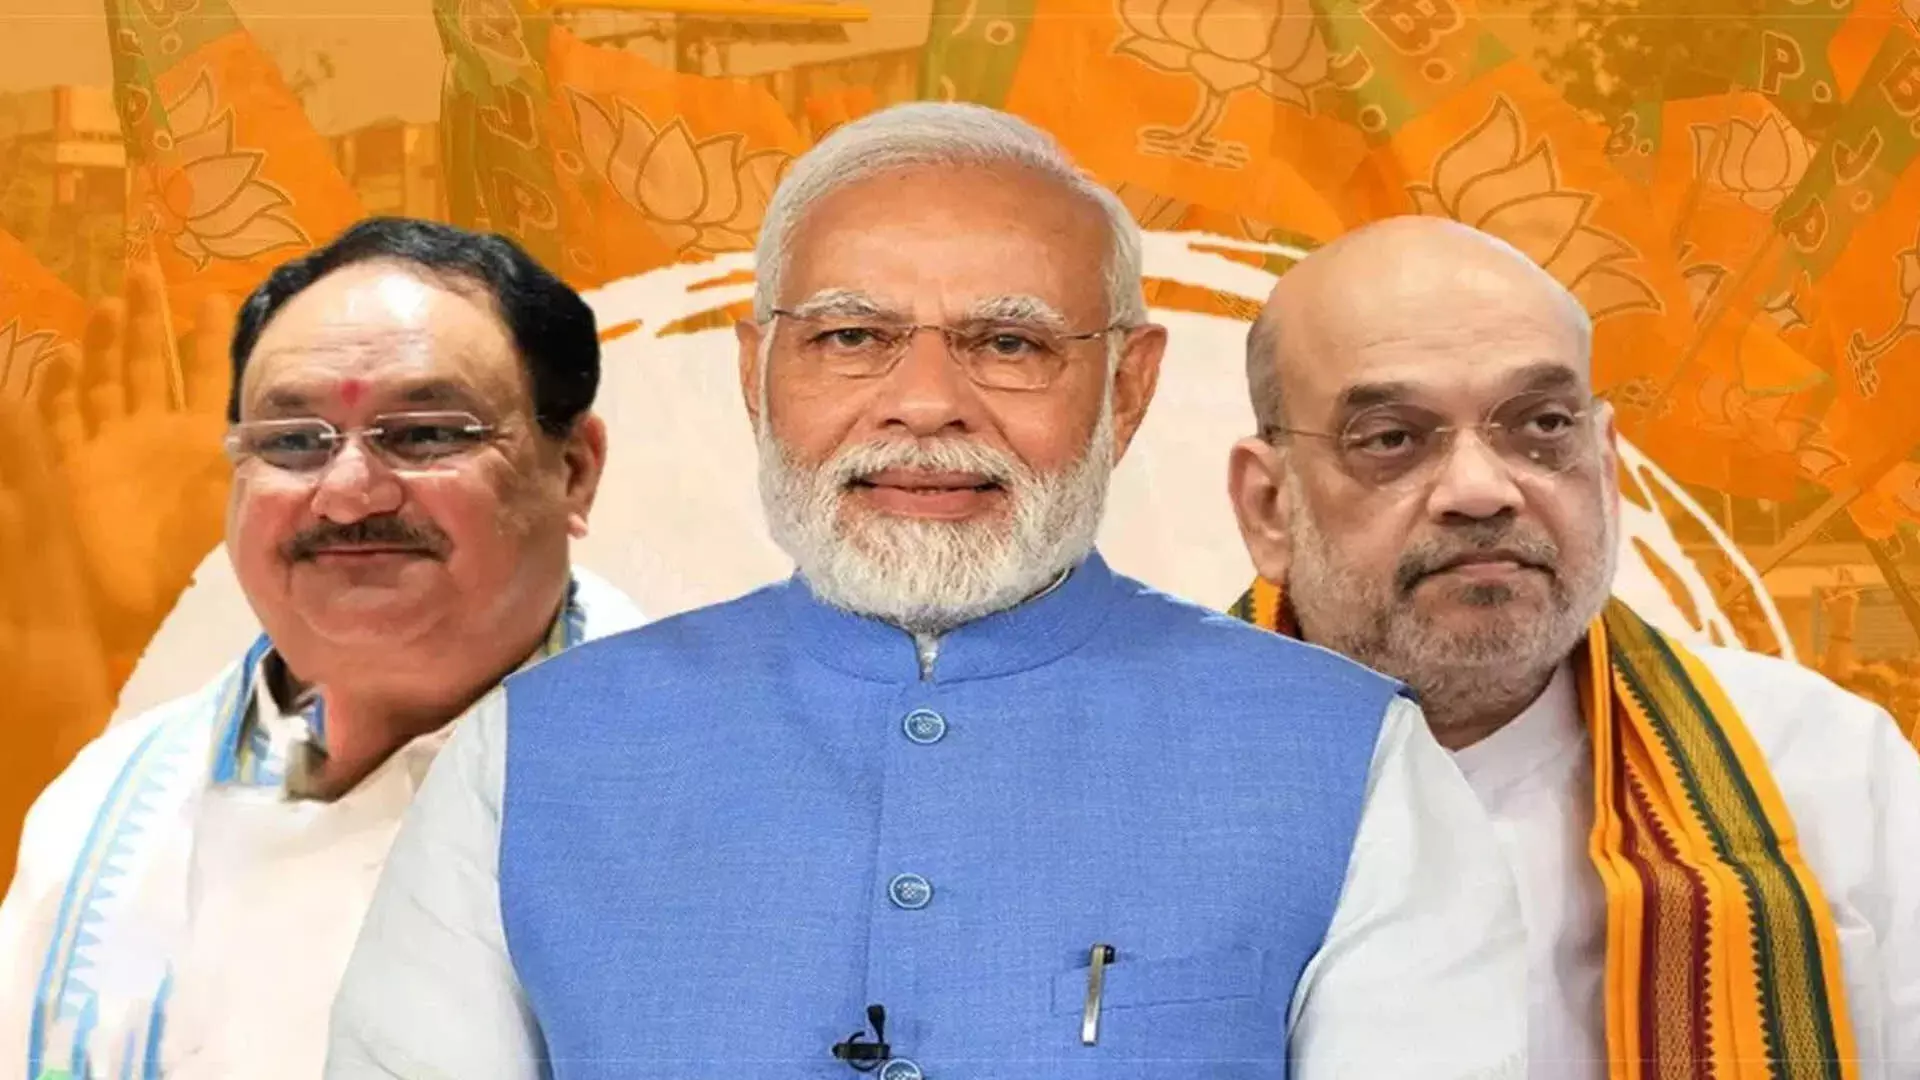 MUMBAI: विधानसभा चुनाव में भाजपा 160 सीटों की मांग की